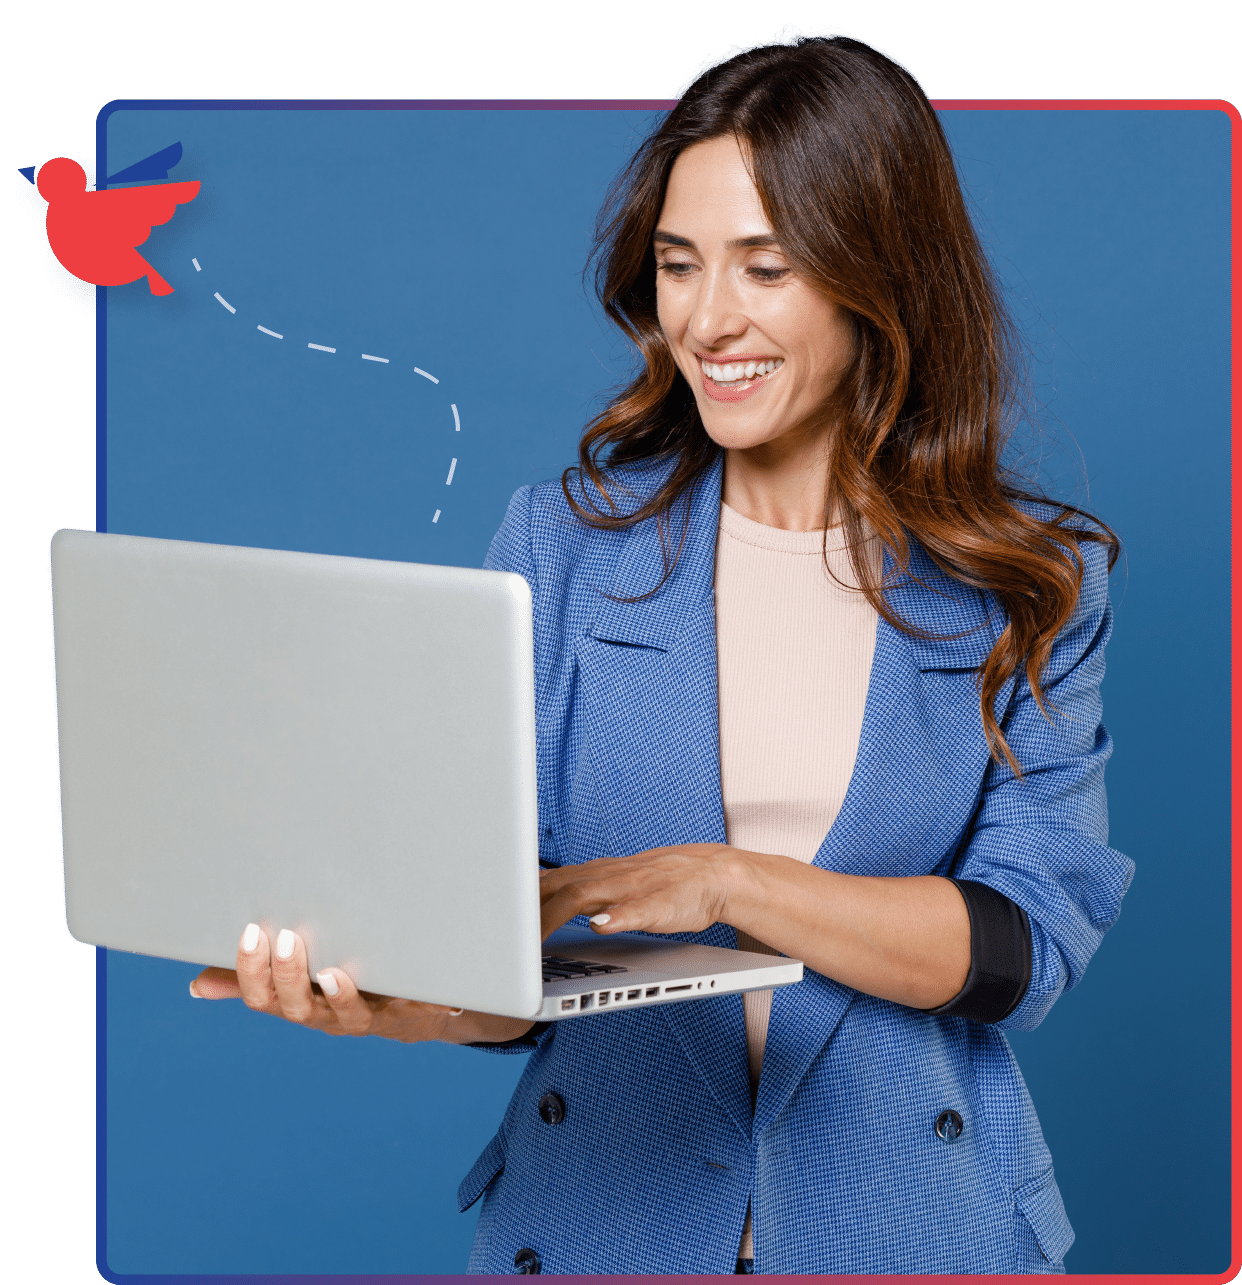 une femme en chemise bleue tient un ordinateur portable et sourit